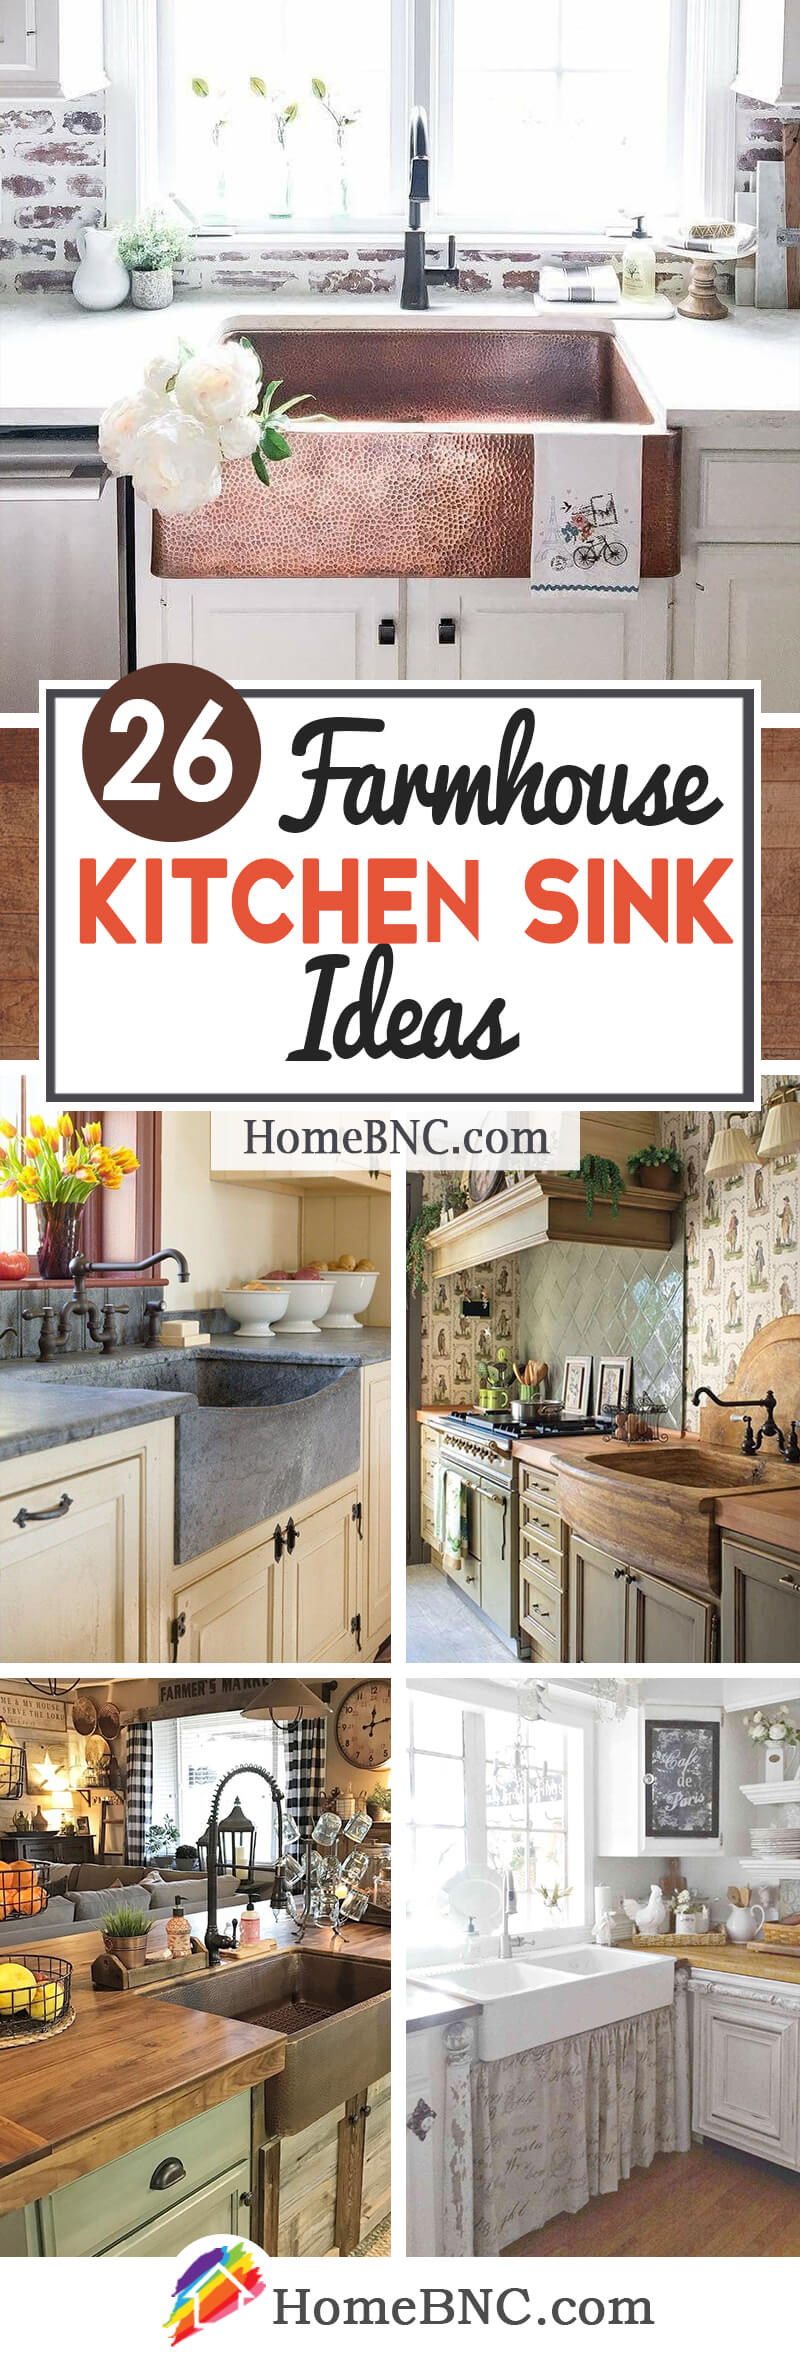 Farmhouse Kitchen Sink Ideas